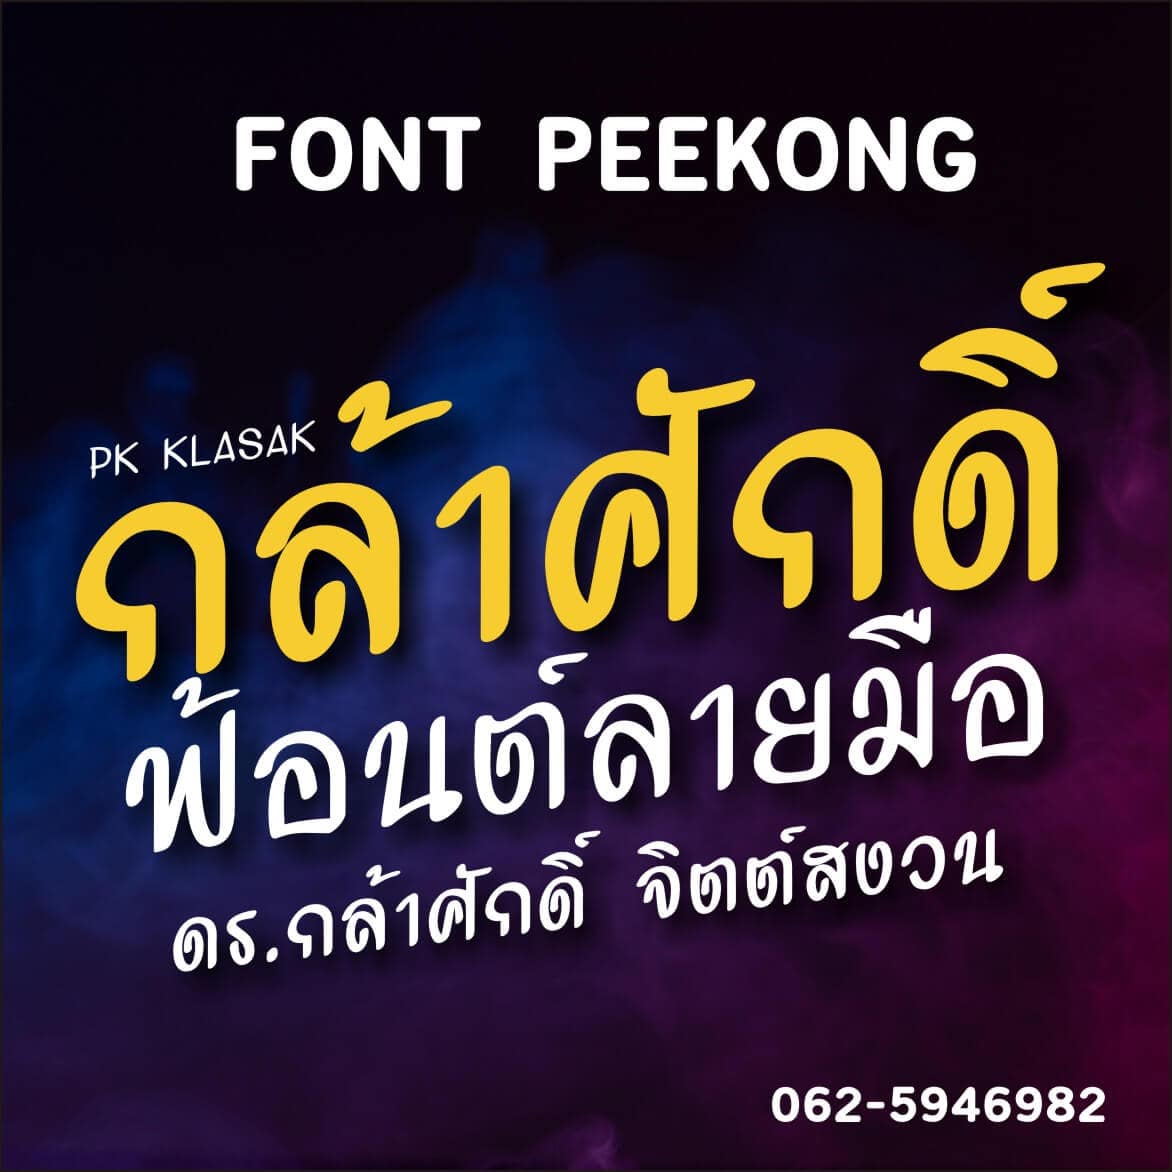 ฟ้อนต์ไทย PK klasak (กล้าศักดิ์) โหลดฟ้อนต์ภาษาไทย ฟ้อนต์ลายมือ ดาวน์โหลดตัวหนังสือ